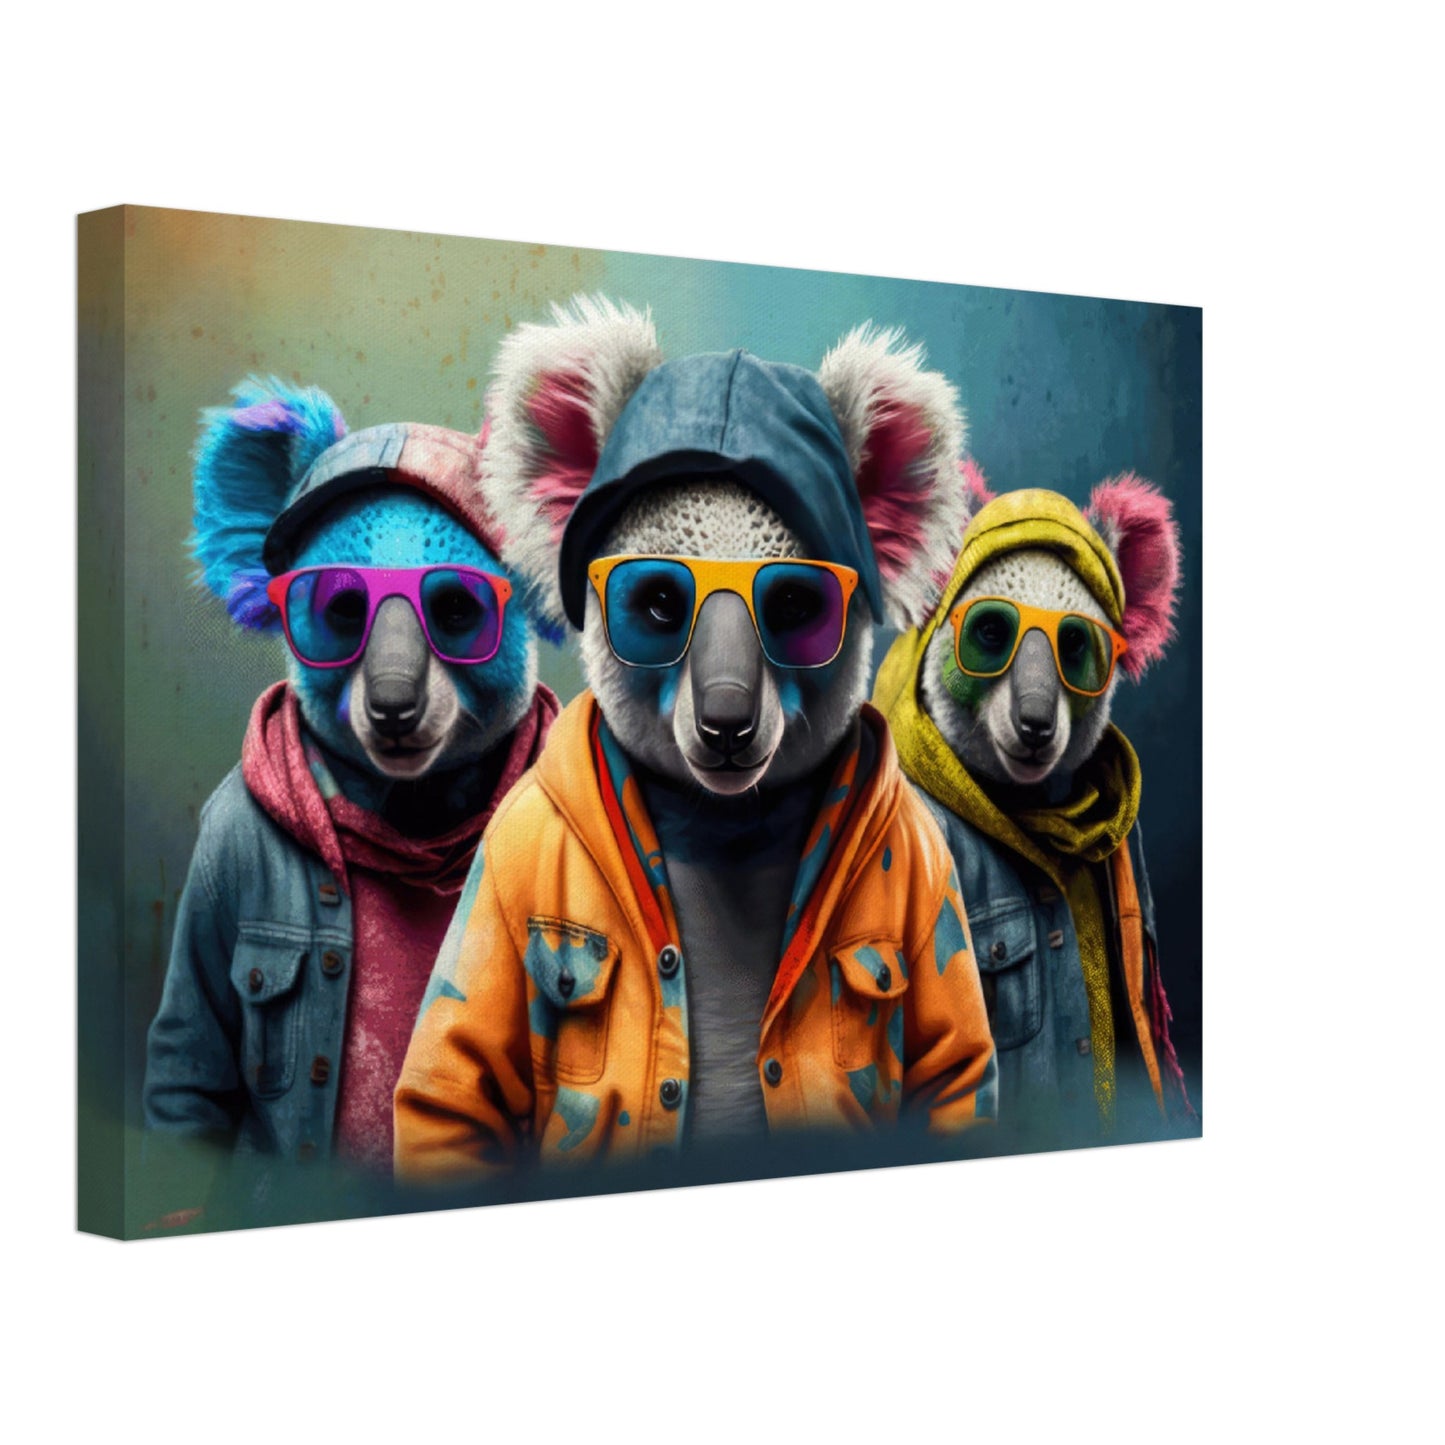 Down Under Delights - Koala Wandbild - Crazy Wildlife Leinwand ColorWorld im Querformat - Coole Tiere & Animals Kunstdruck